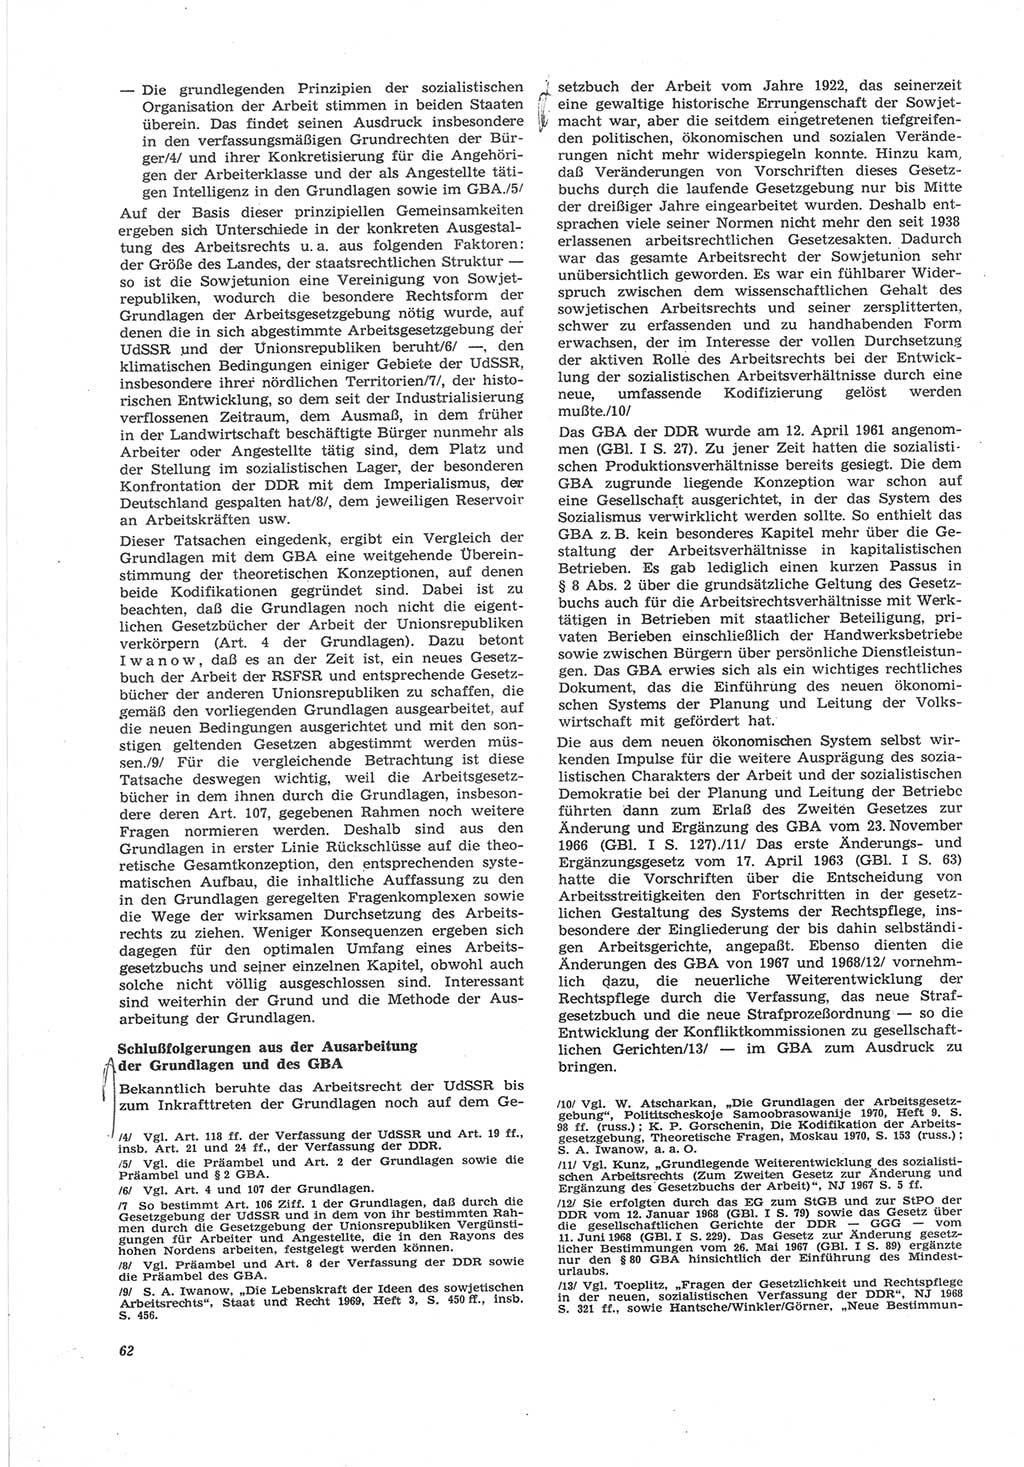 Neue Justiz (NJ), Zeitschrift für Recht und Rechtswissenschaft [Deutsche Demokratische Republik (DDR)], 25. Jahrgang 1971, Seite 62 (NJ DDR 1971, S. 62)